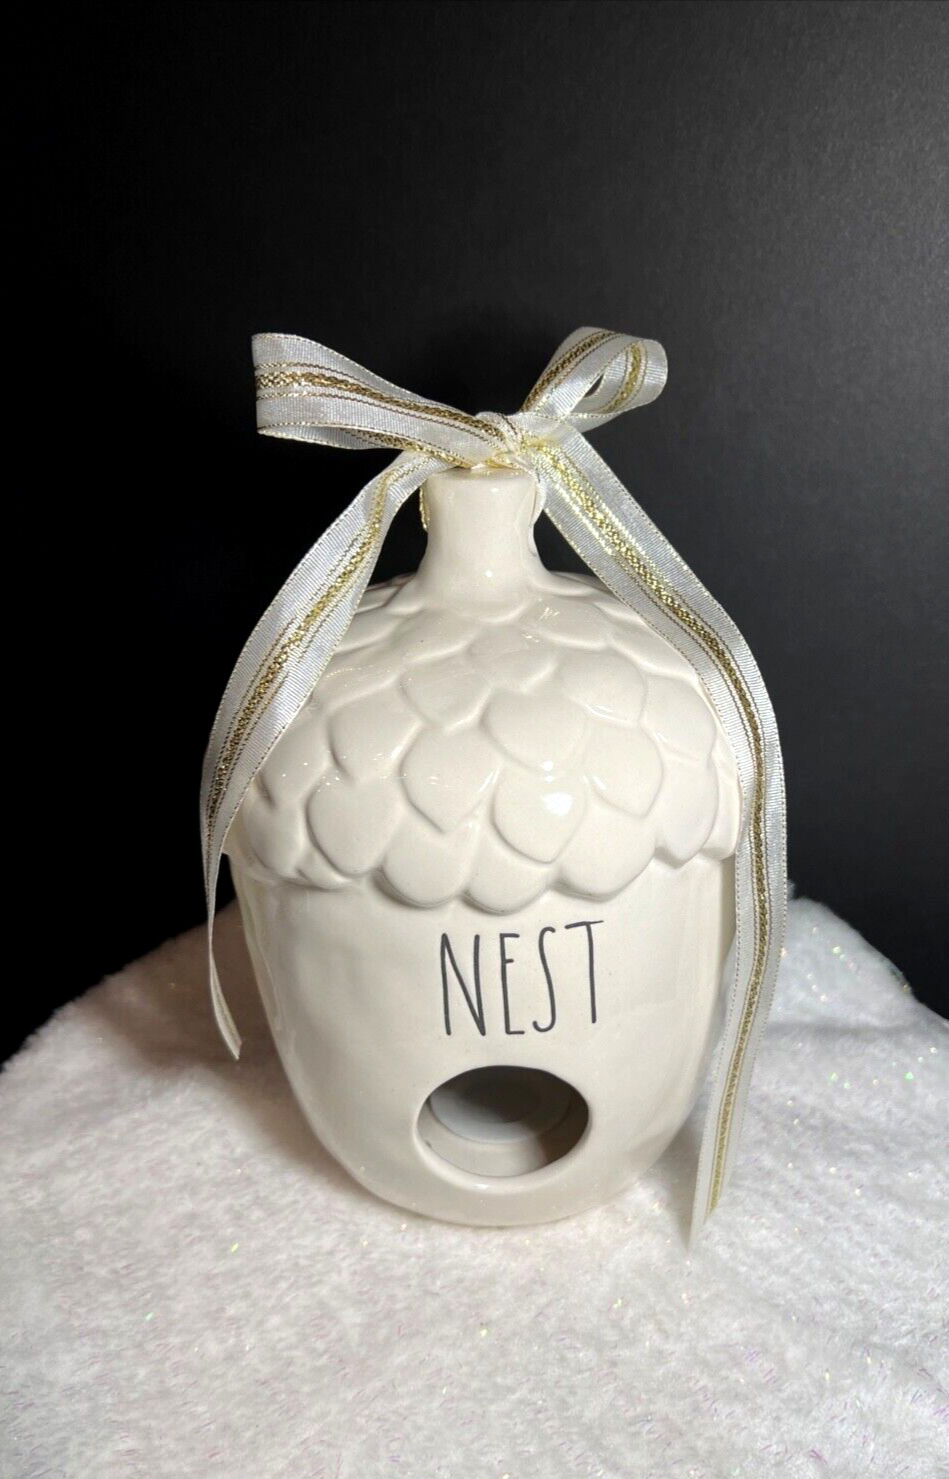 Rae Dunn Ceramic Nest Birdhouse Acorn Style 7” High